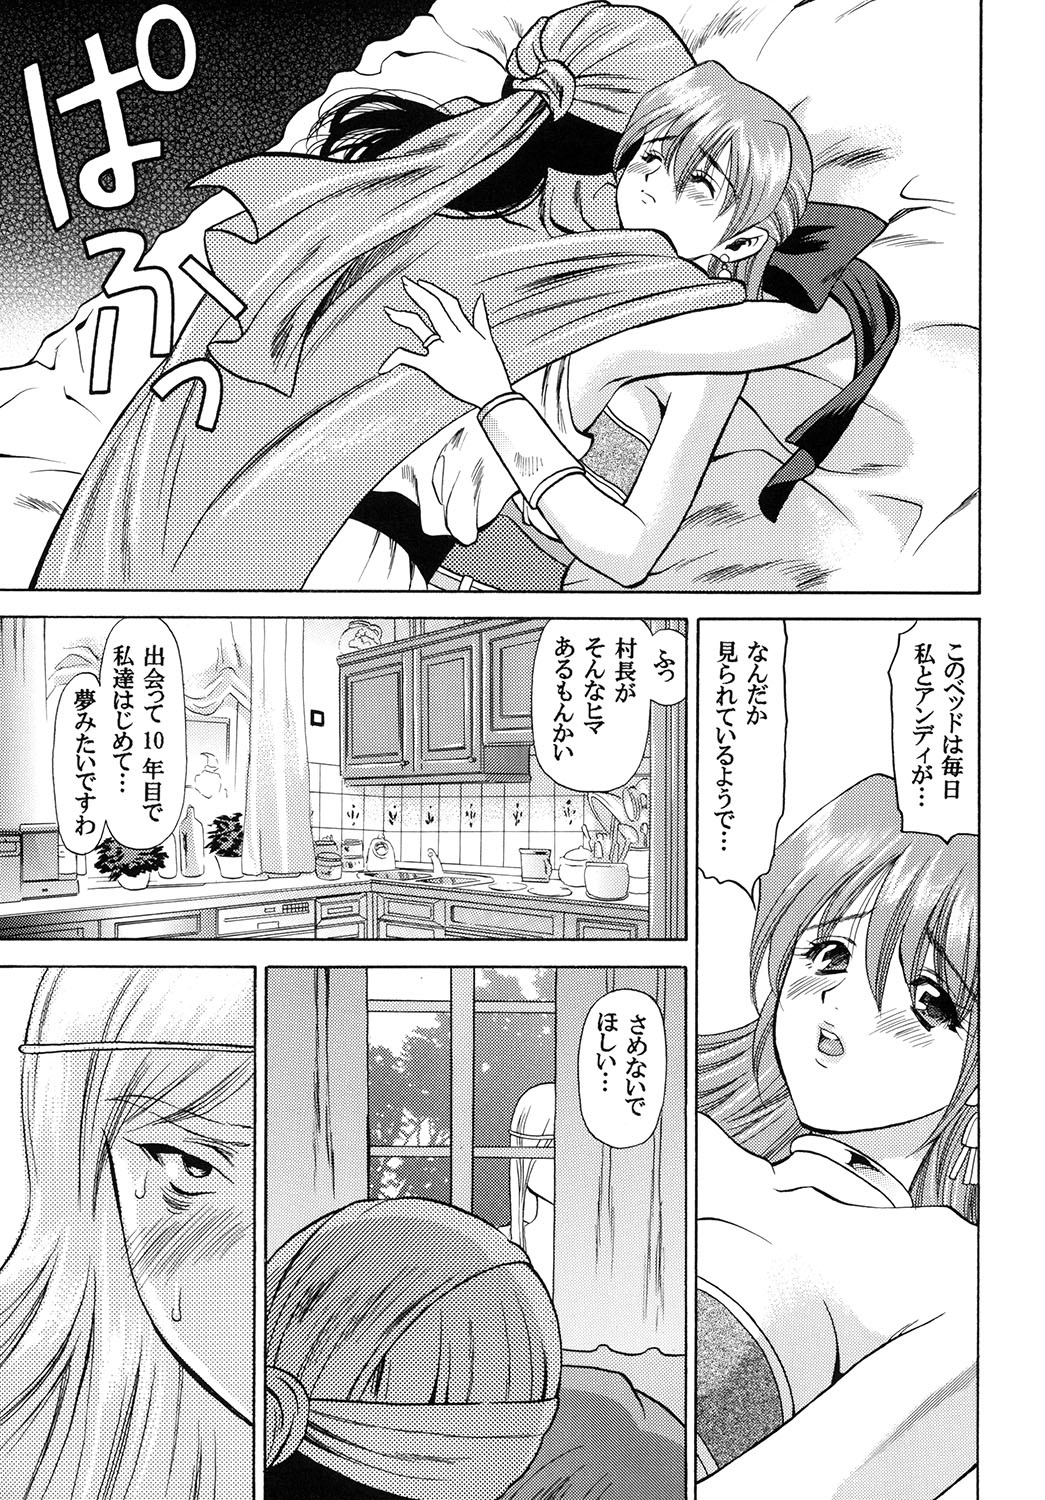 [Houruri (Houruri)] Tsukiyo no Sabaku de Hajimete wo (Dragon Quest V) page 24 full